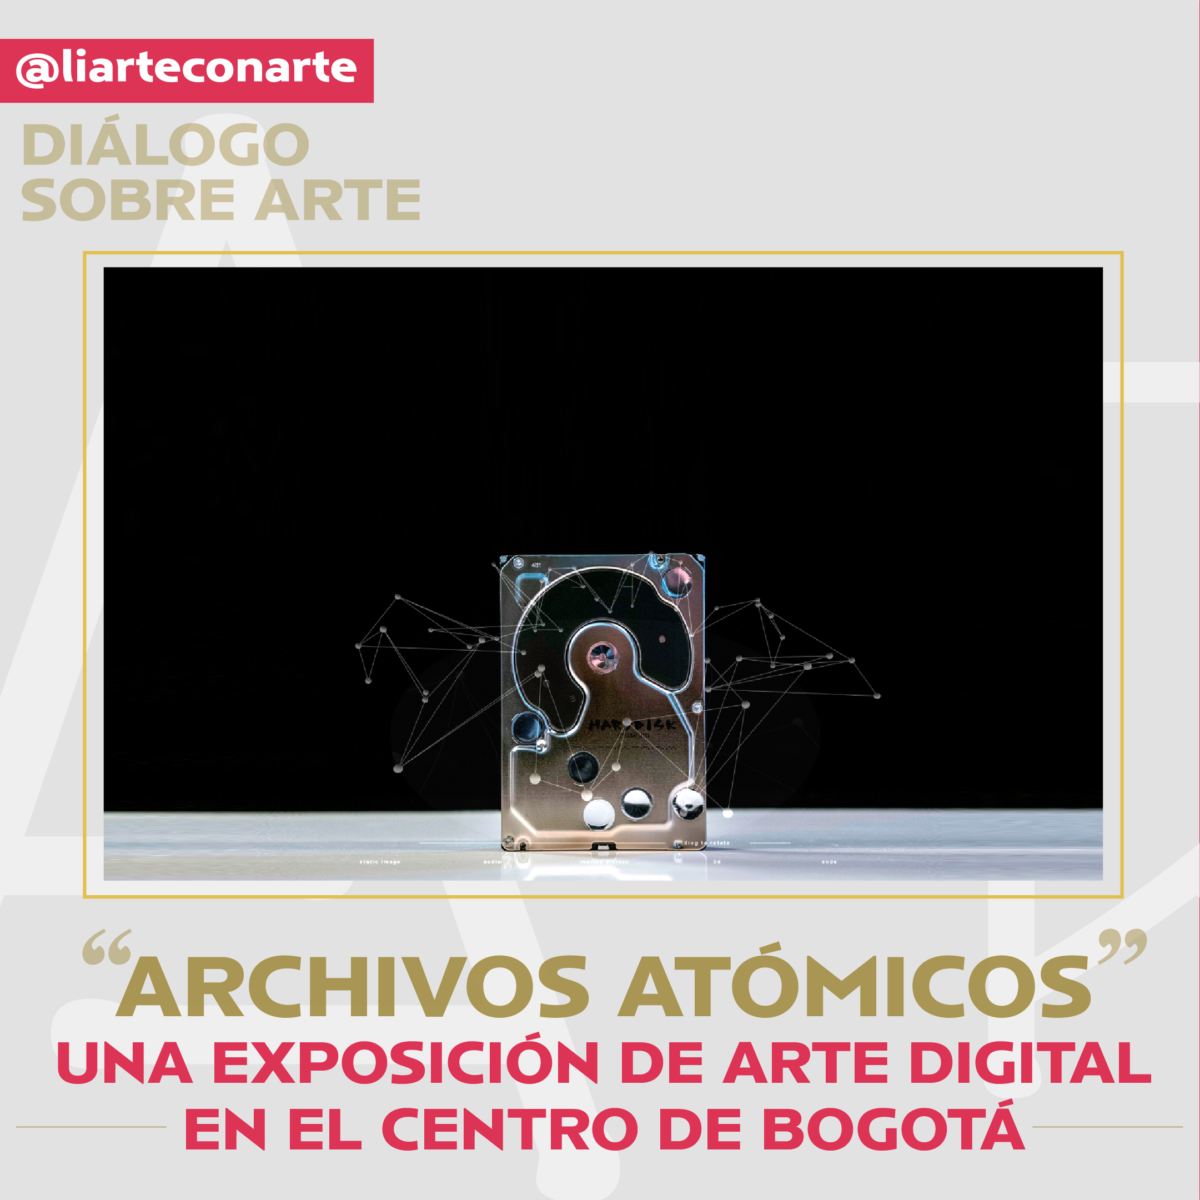 “Archivos atómicos”, una exposición de arte digital en el centro de Bogotá